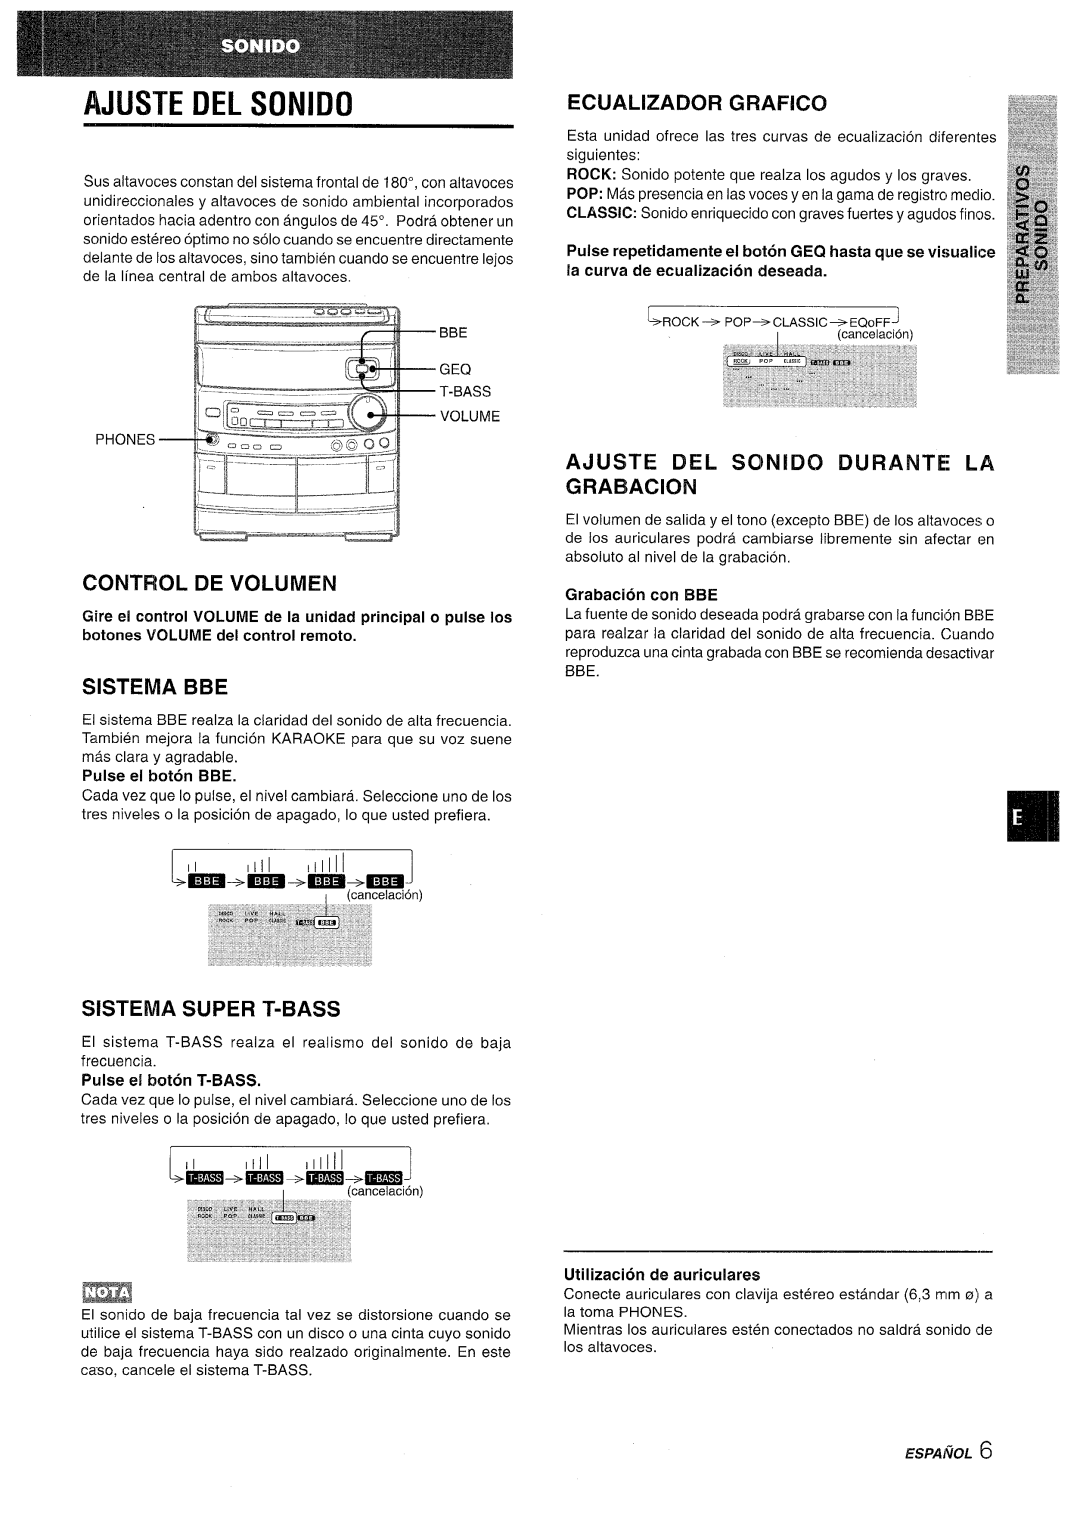 Aiwa CX-NV8000 manual Ajijste Del Sonido, Control De Volumen, Sistema Bbe, Sistema Super T-Bass, Pulse el boton BBE 